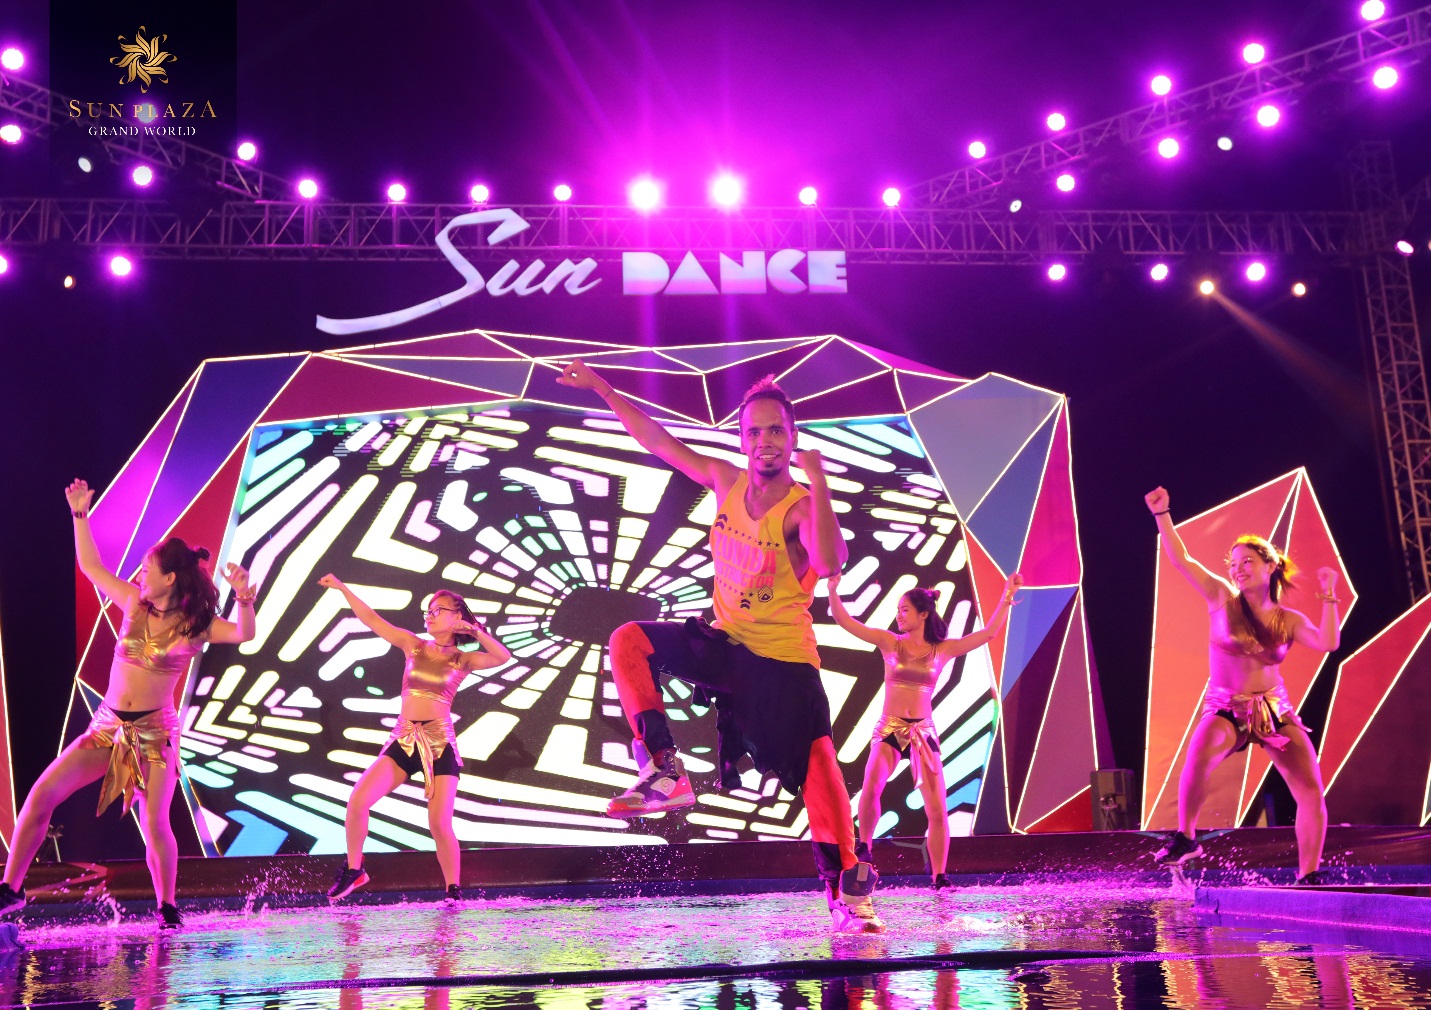 Sân khấu tiếp tục sôi động khi các đội nhảy tham gia Dance Cover Contest “xuất trận”. Âm nhạc cỡ lớn và những vũ điệu điêu luyện trên “sân khấu nước” độc đáo “đốt cháy” khán giả Hạ Long.